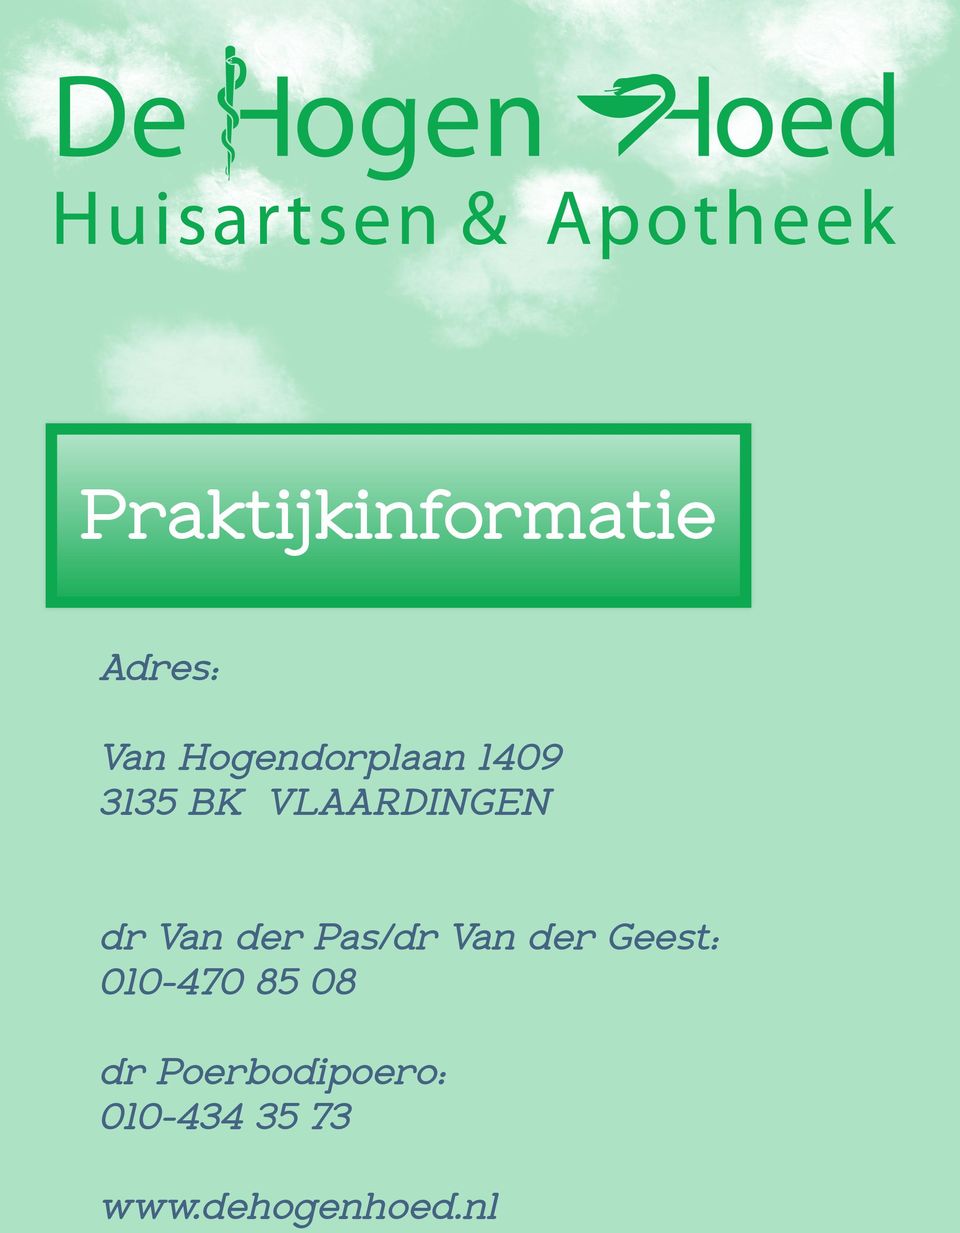 Van der Pas/dr Van der Geest: 010-470 85